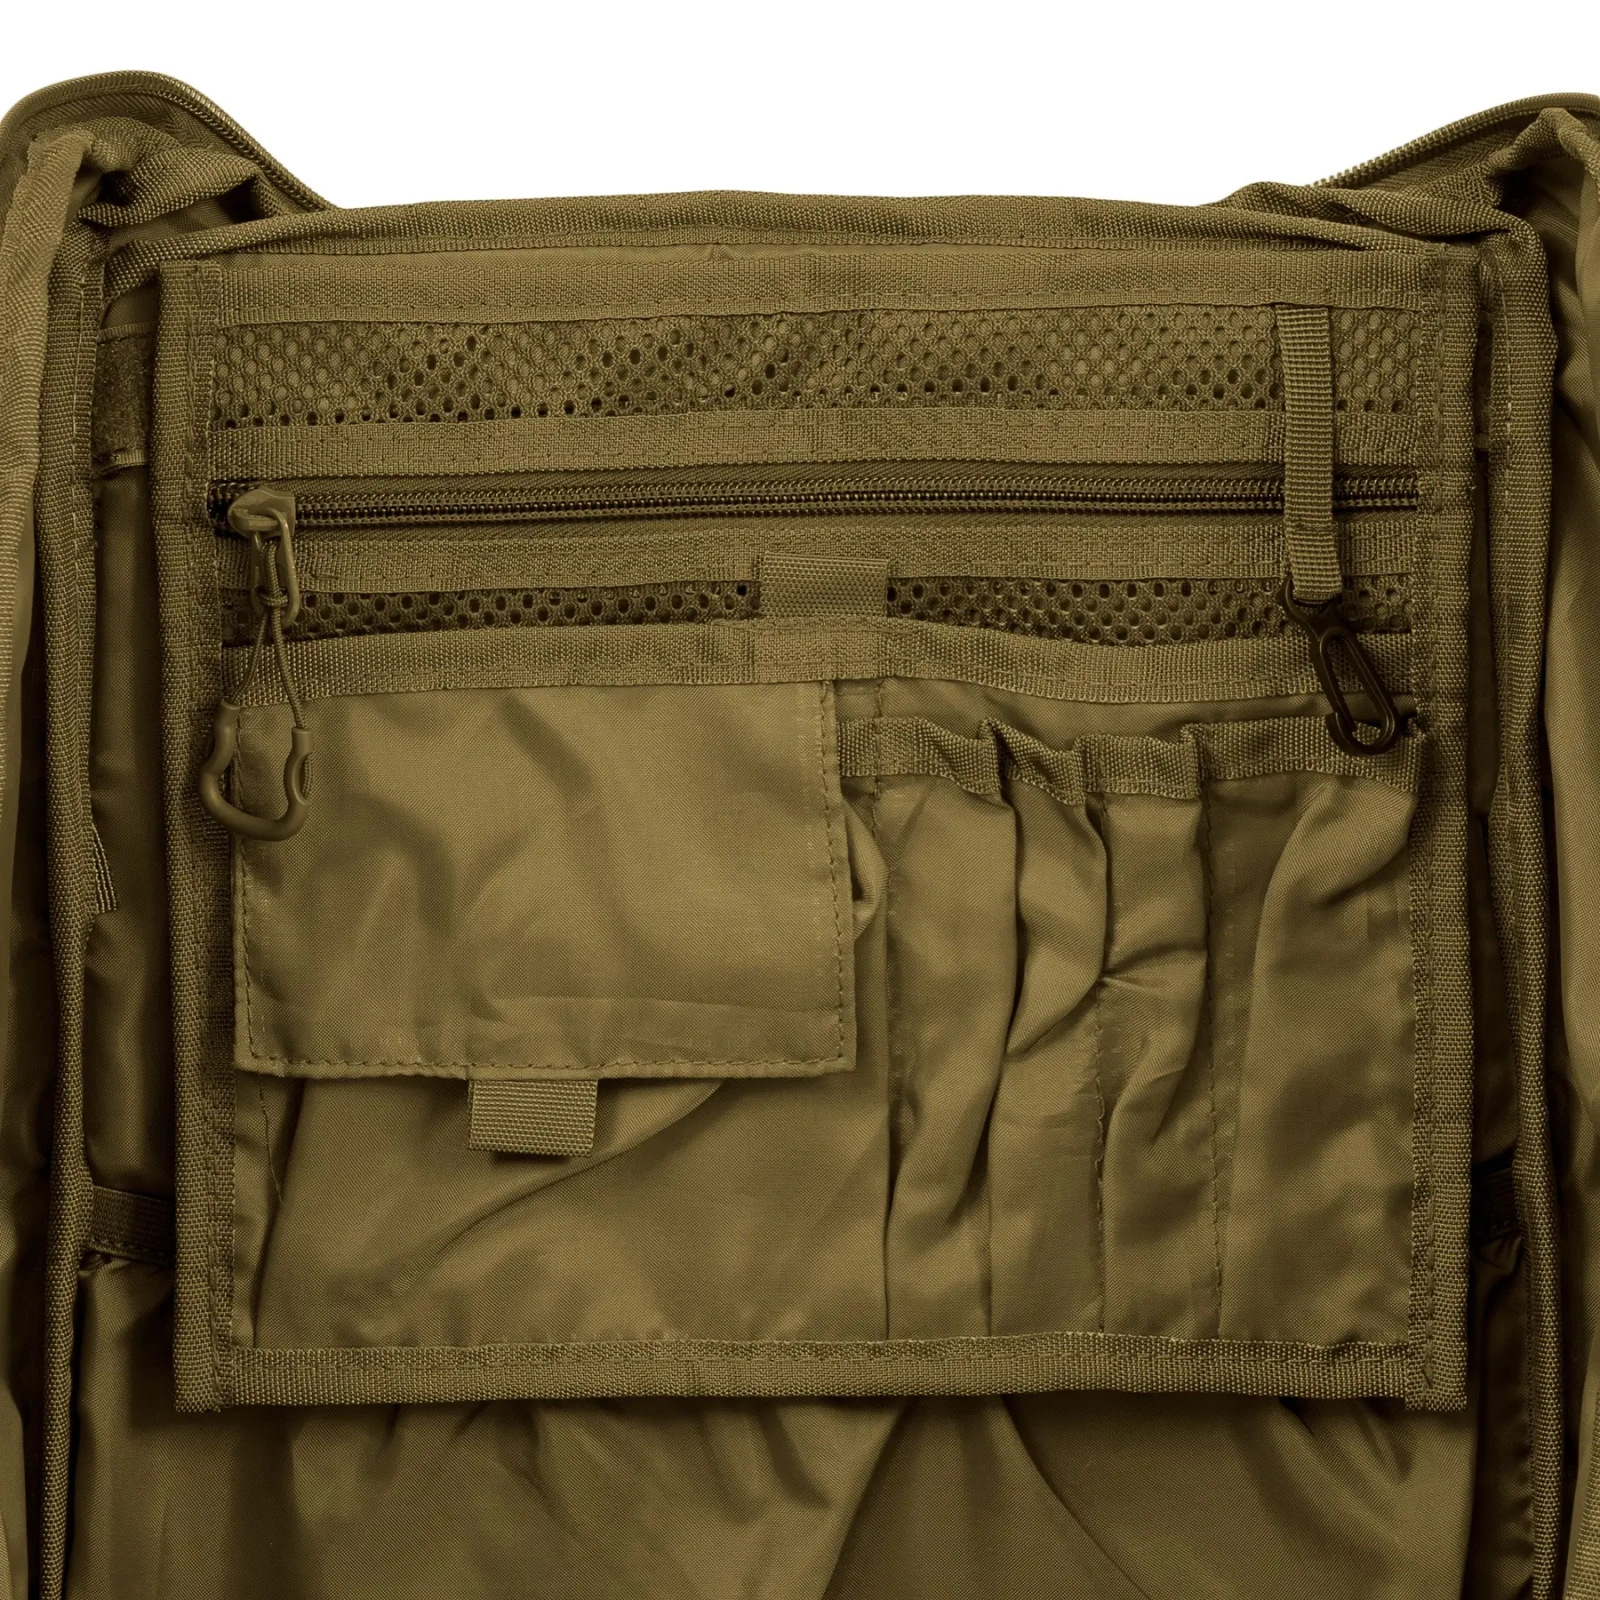 Рюкзак туристический Highlander Eagle 3 Backpack 40L Dark Grey (TT194-DGY) (929725) изображение 9